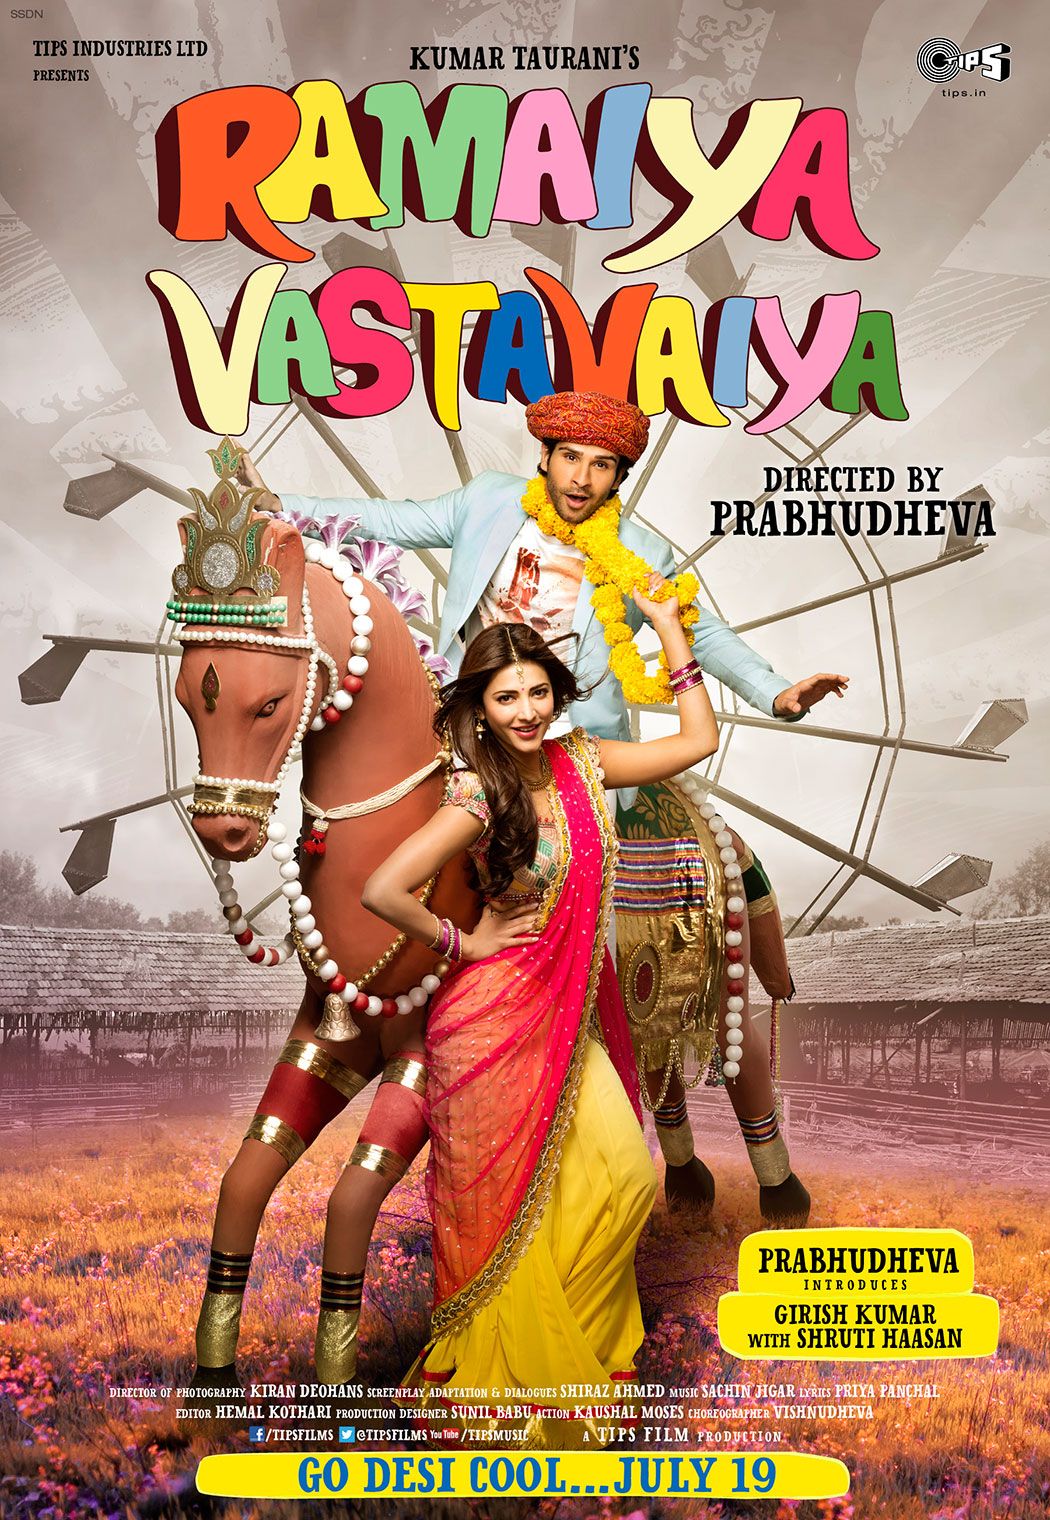 Trailer: Prabhudheva’s ‘Ramaiya Vastavaiya’ Starring Girish Kumar & Shruti Haasan